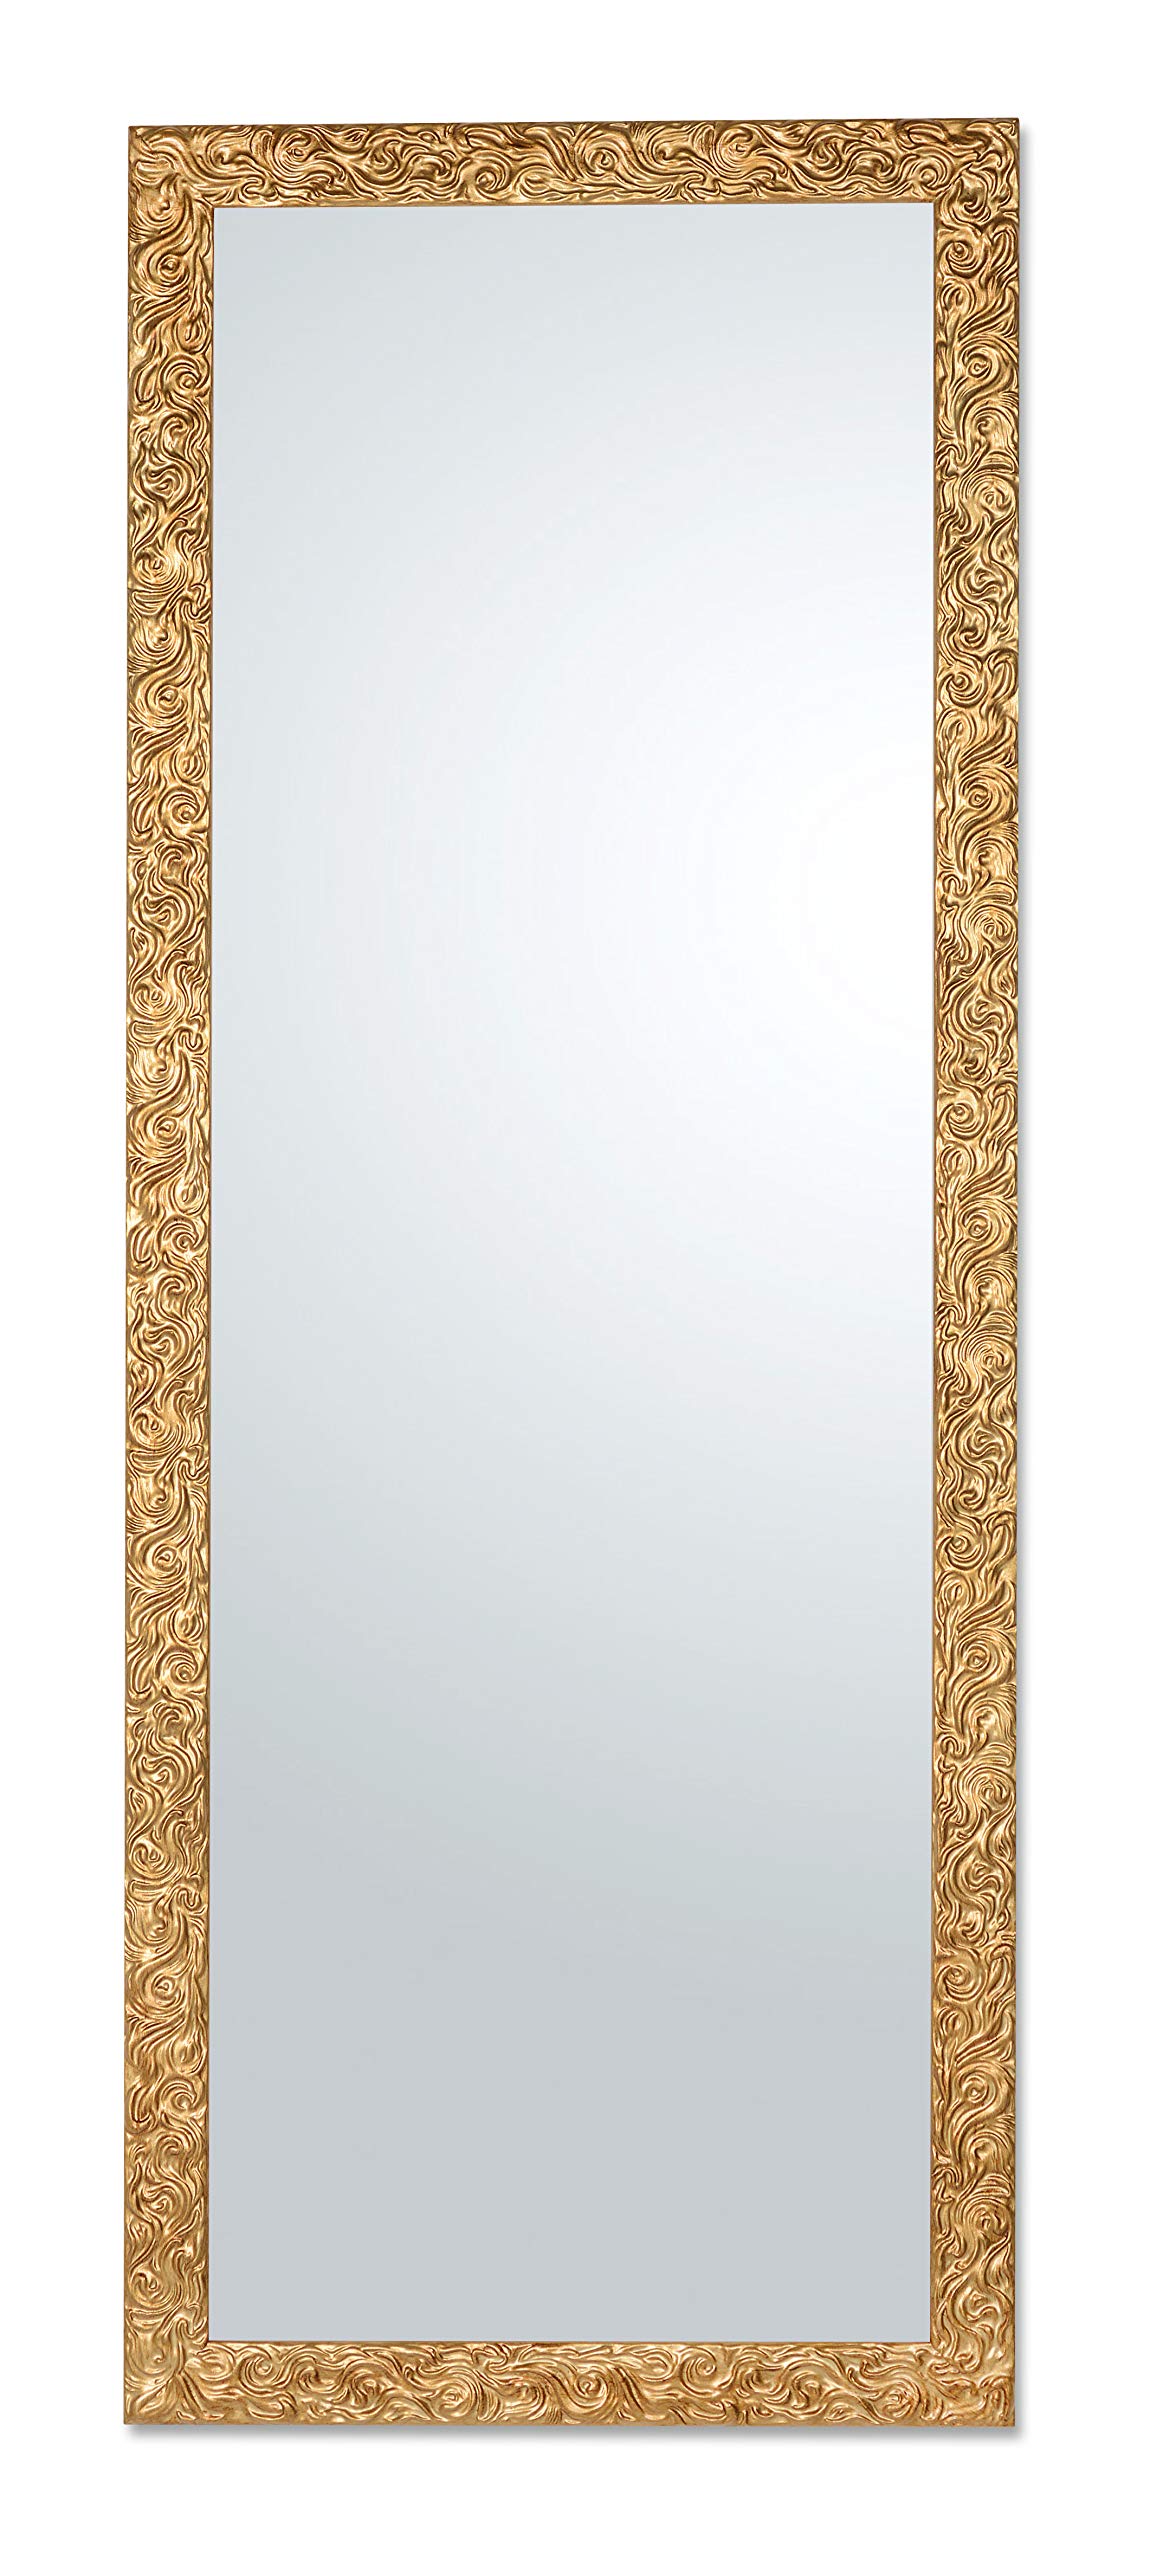 MO.WA Spiegel Wandspiegel Lehnspiegel 55x145 Klassischer Rahmen Ganzkörperspiegel Gold Antik Garderobenspiegel Lehnspiegel Flurspiegel mit Massivholzrahmen, Bodenspiegel